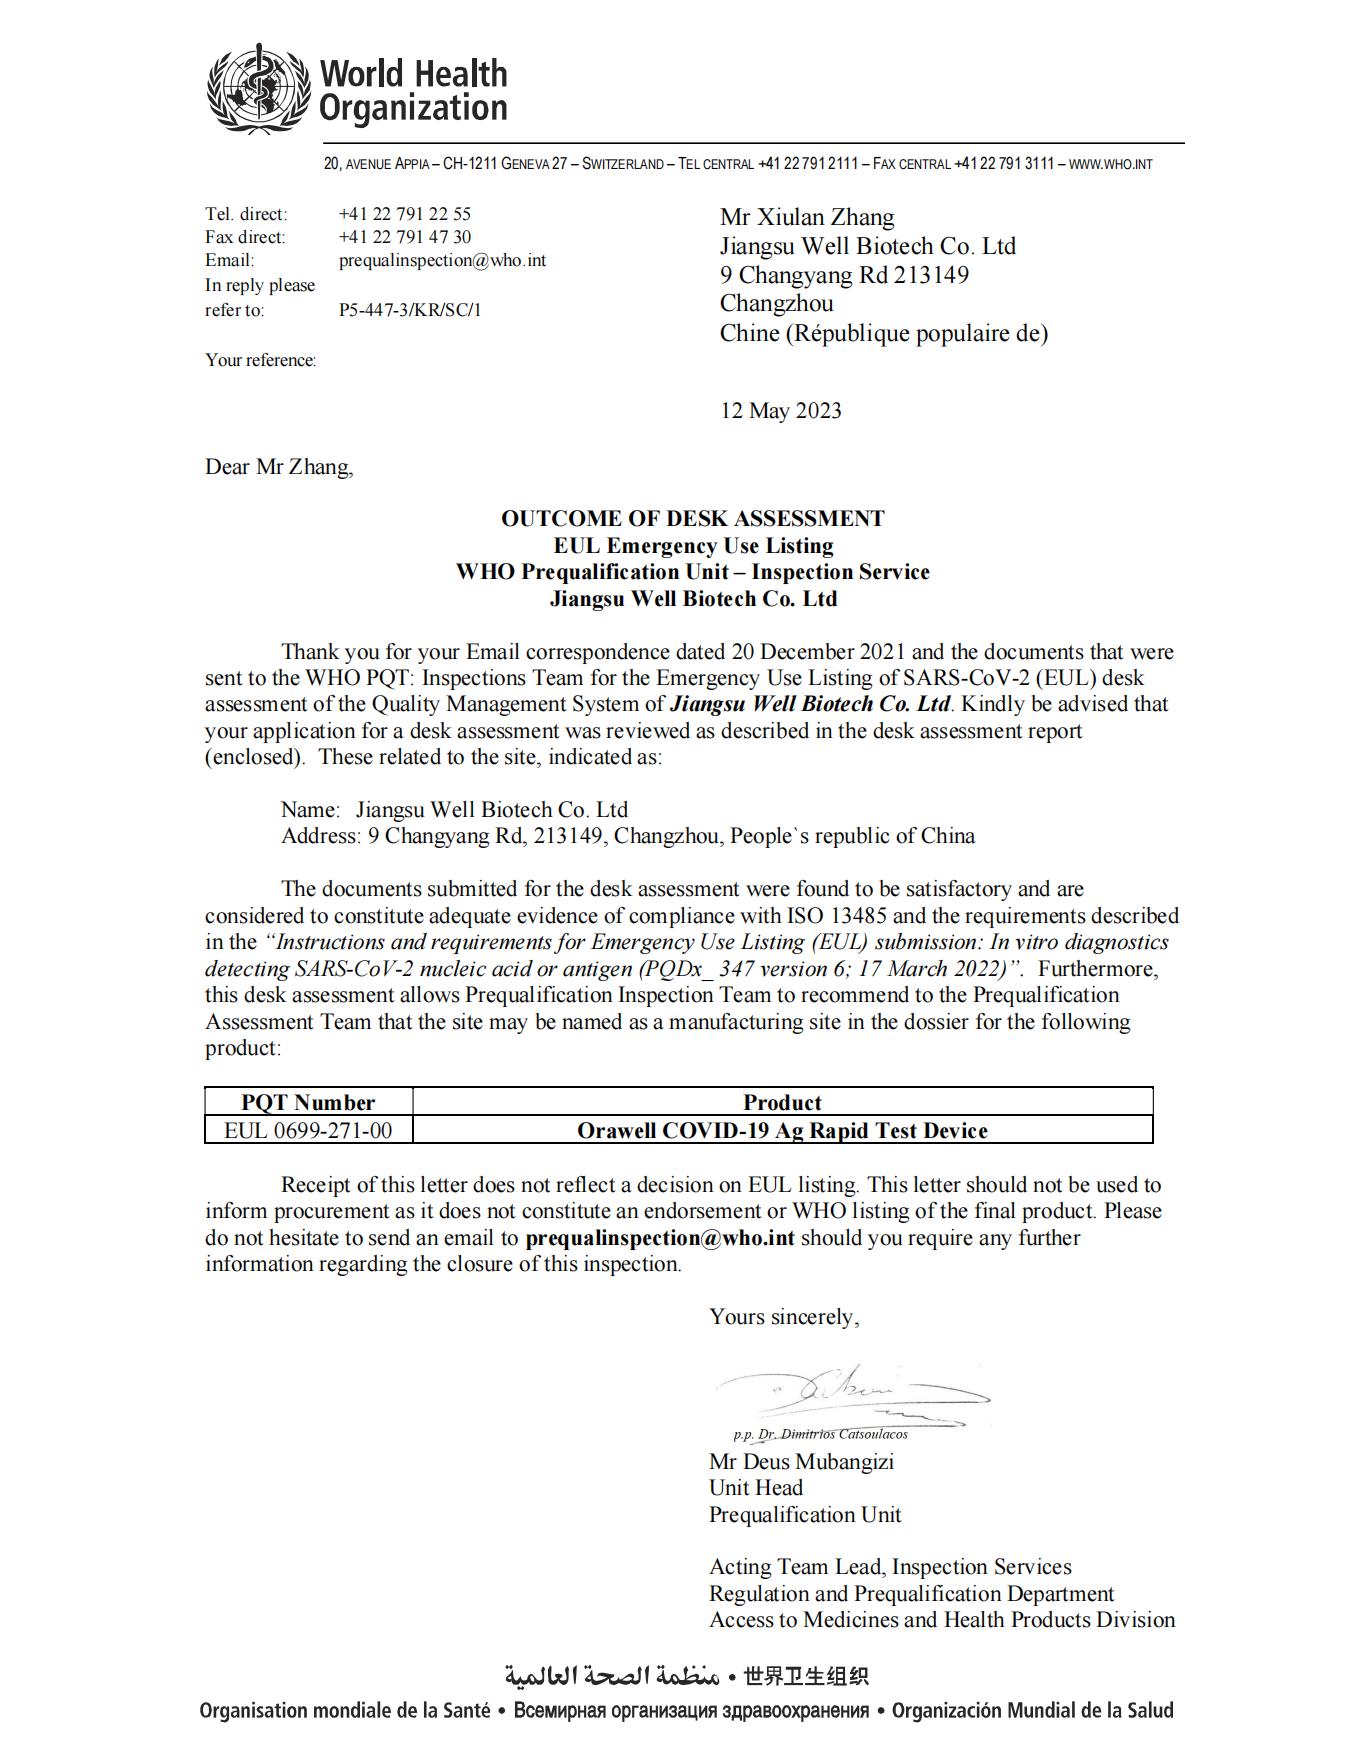 (EUL 0699-271-00) Desk Assessment Outcome Letter Jiangsu Well Biotech(1)_00.jpg